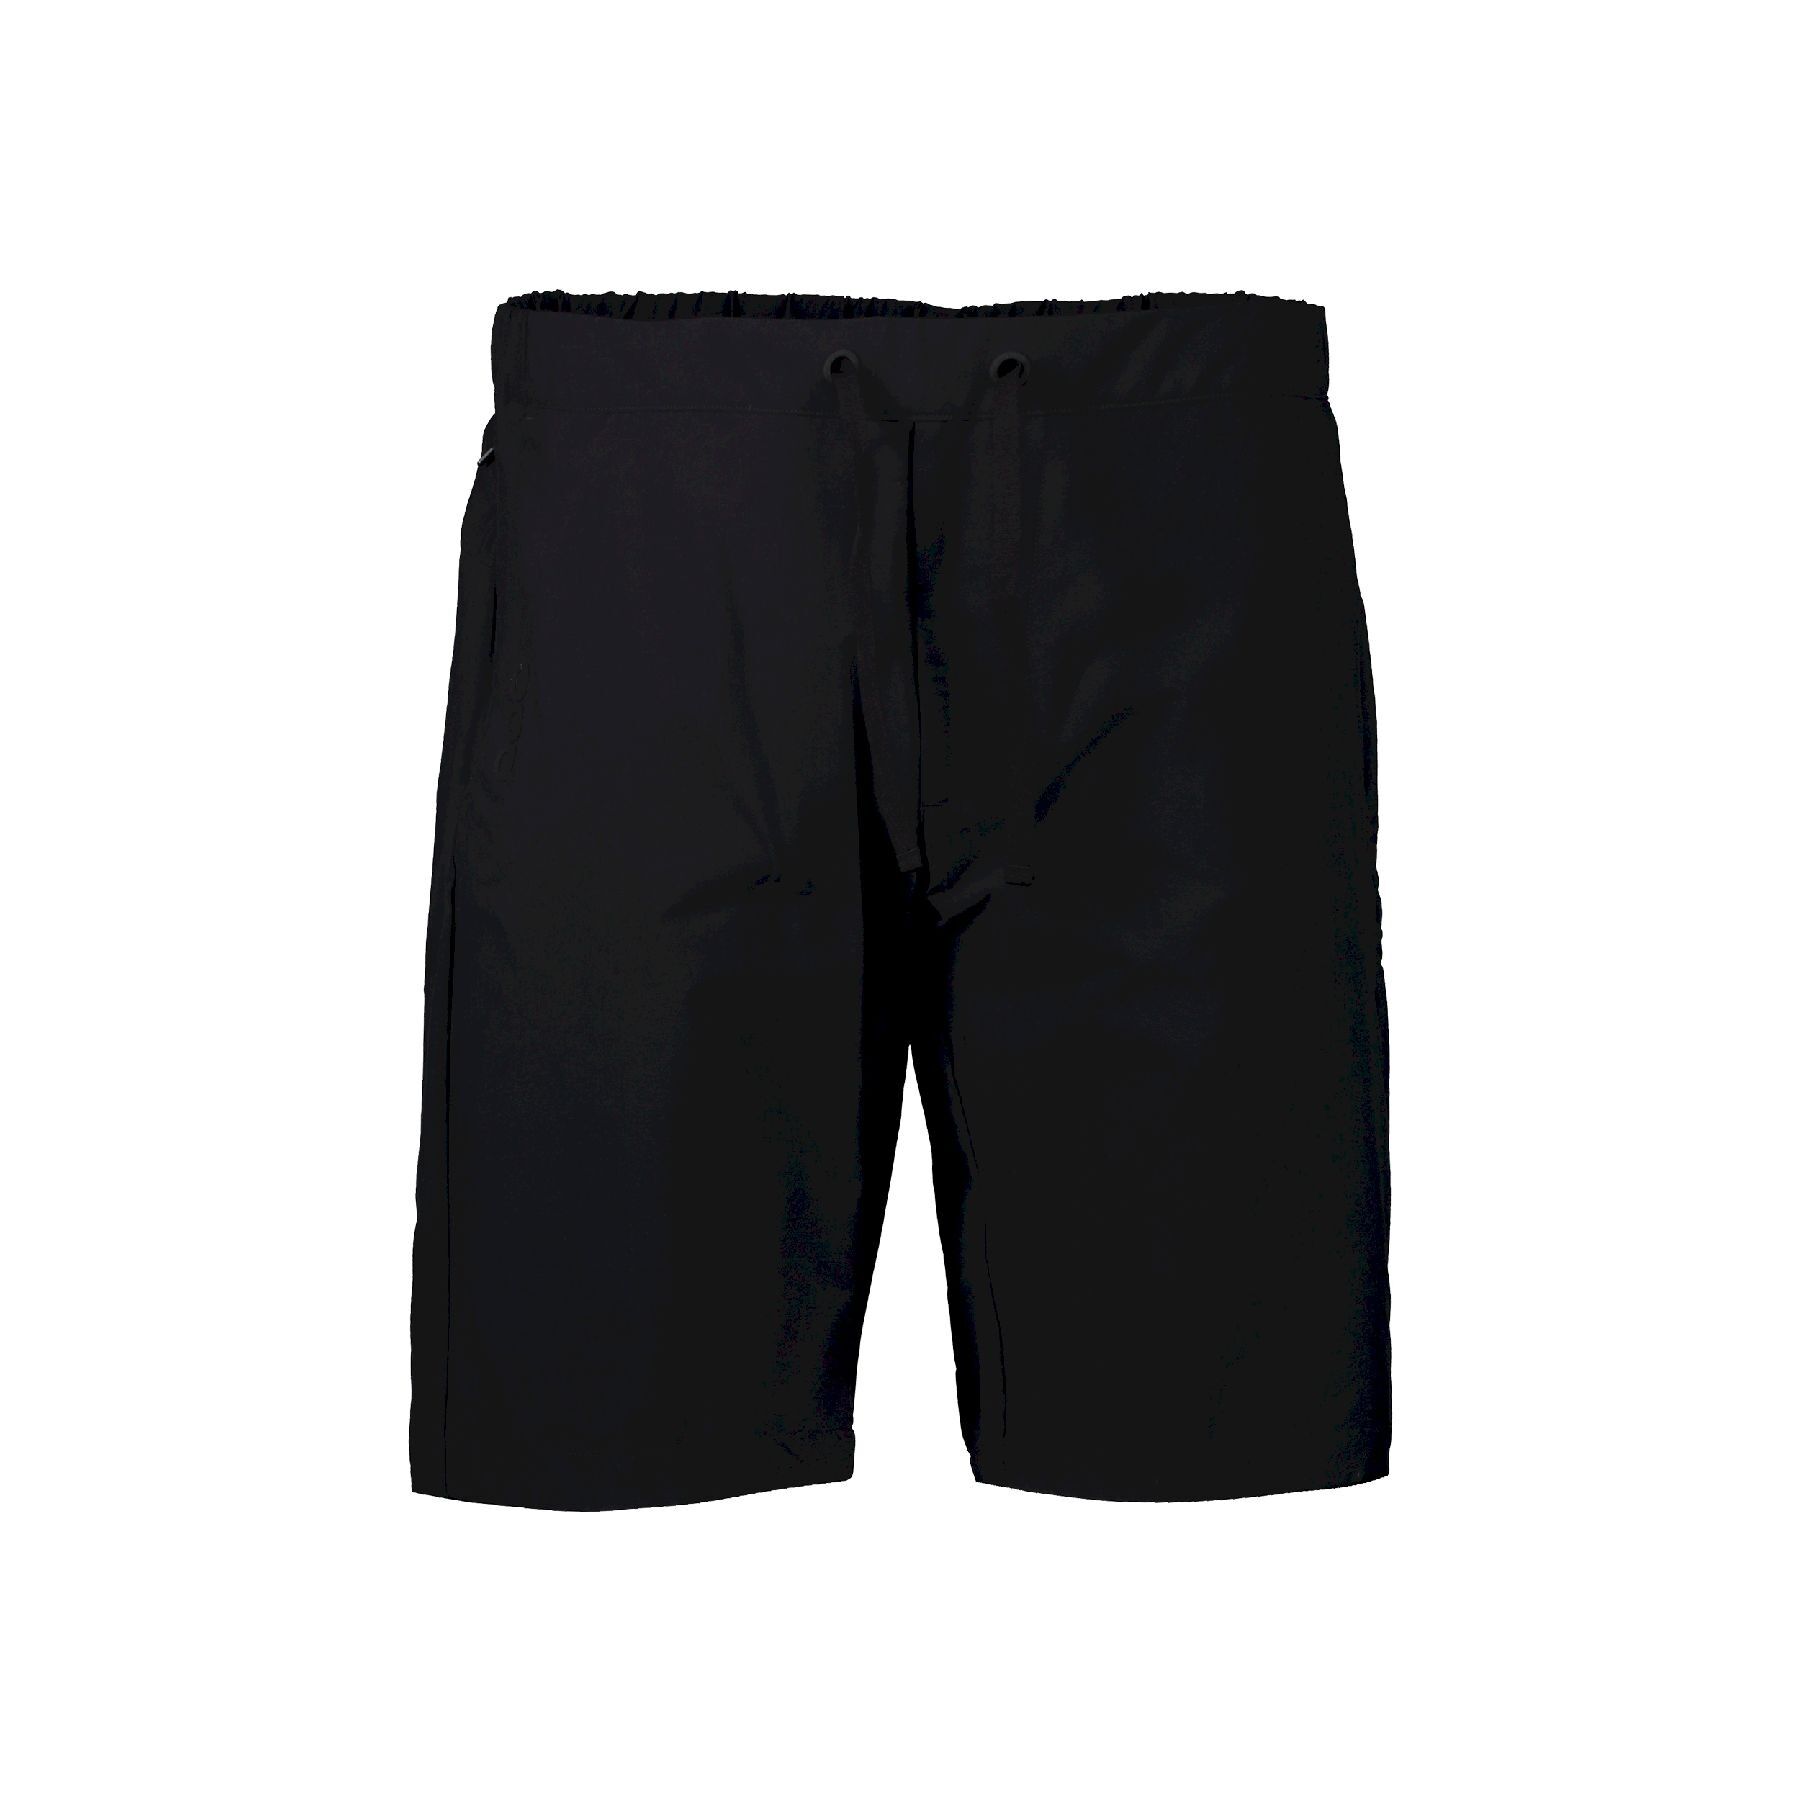 Poc Transcend Shorts - Pantaloncini MTB - Uomo